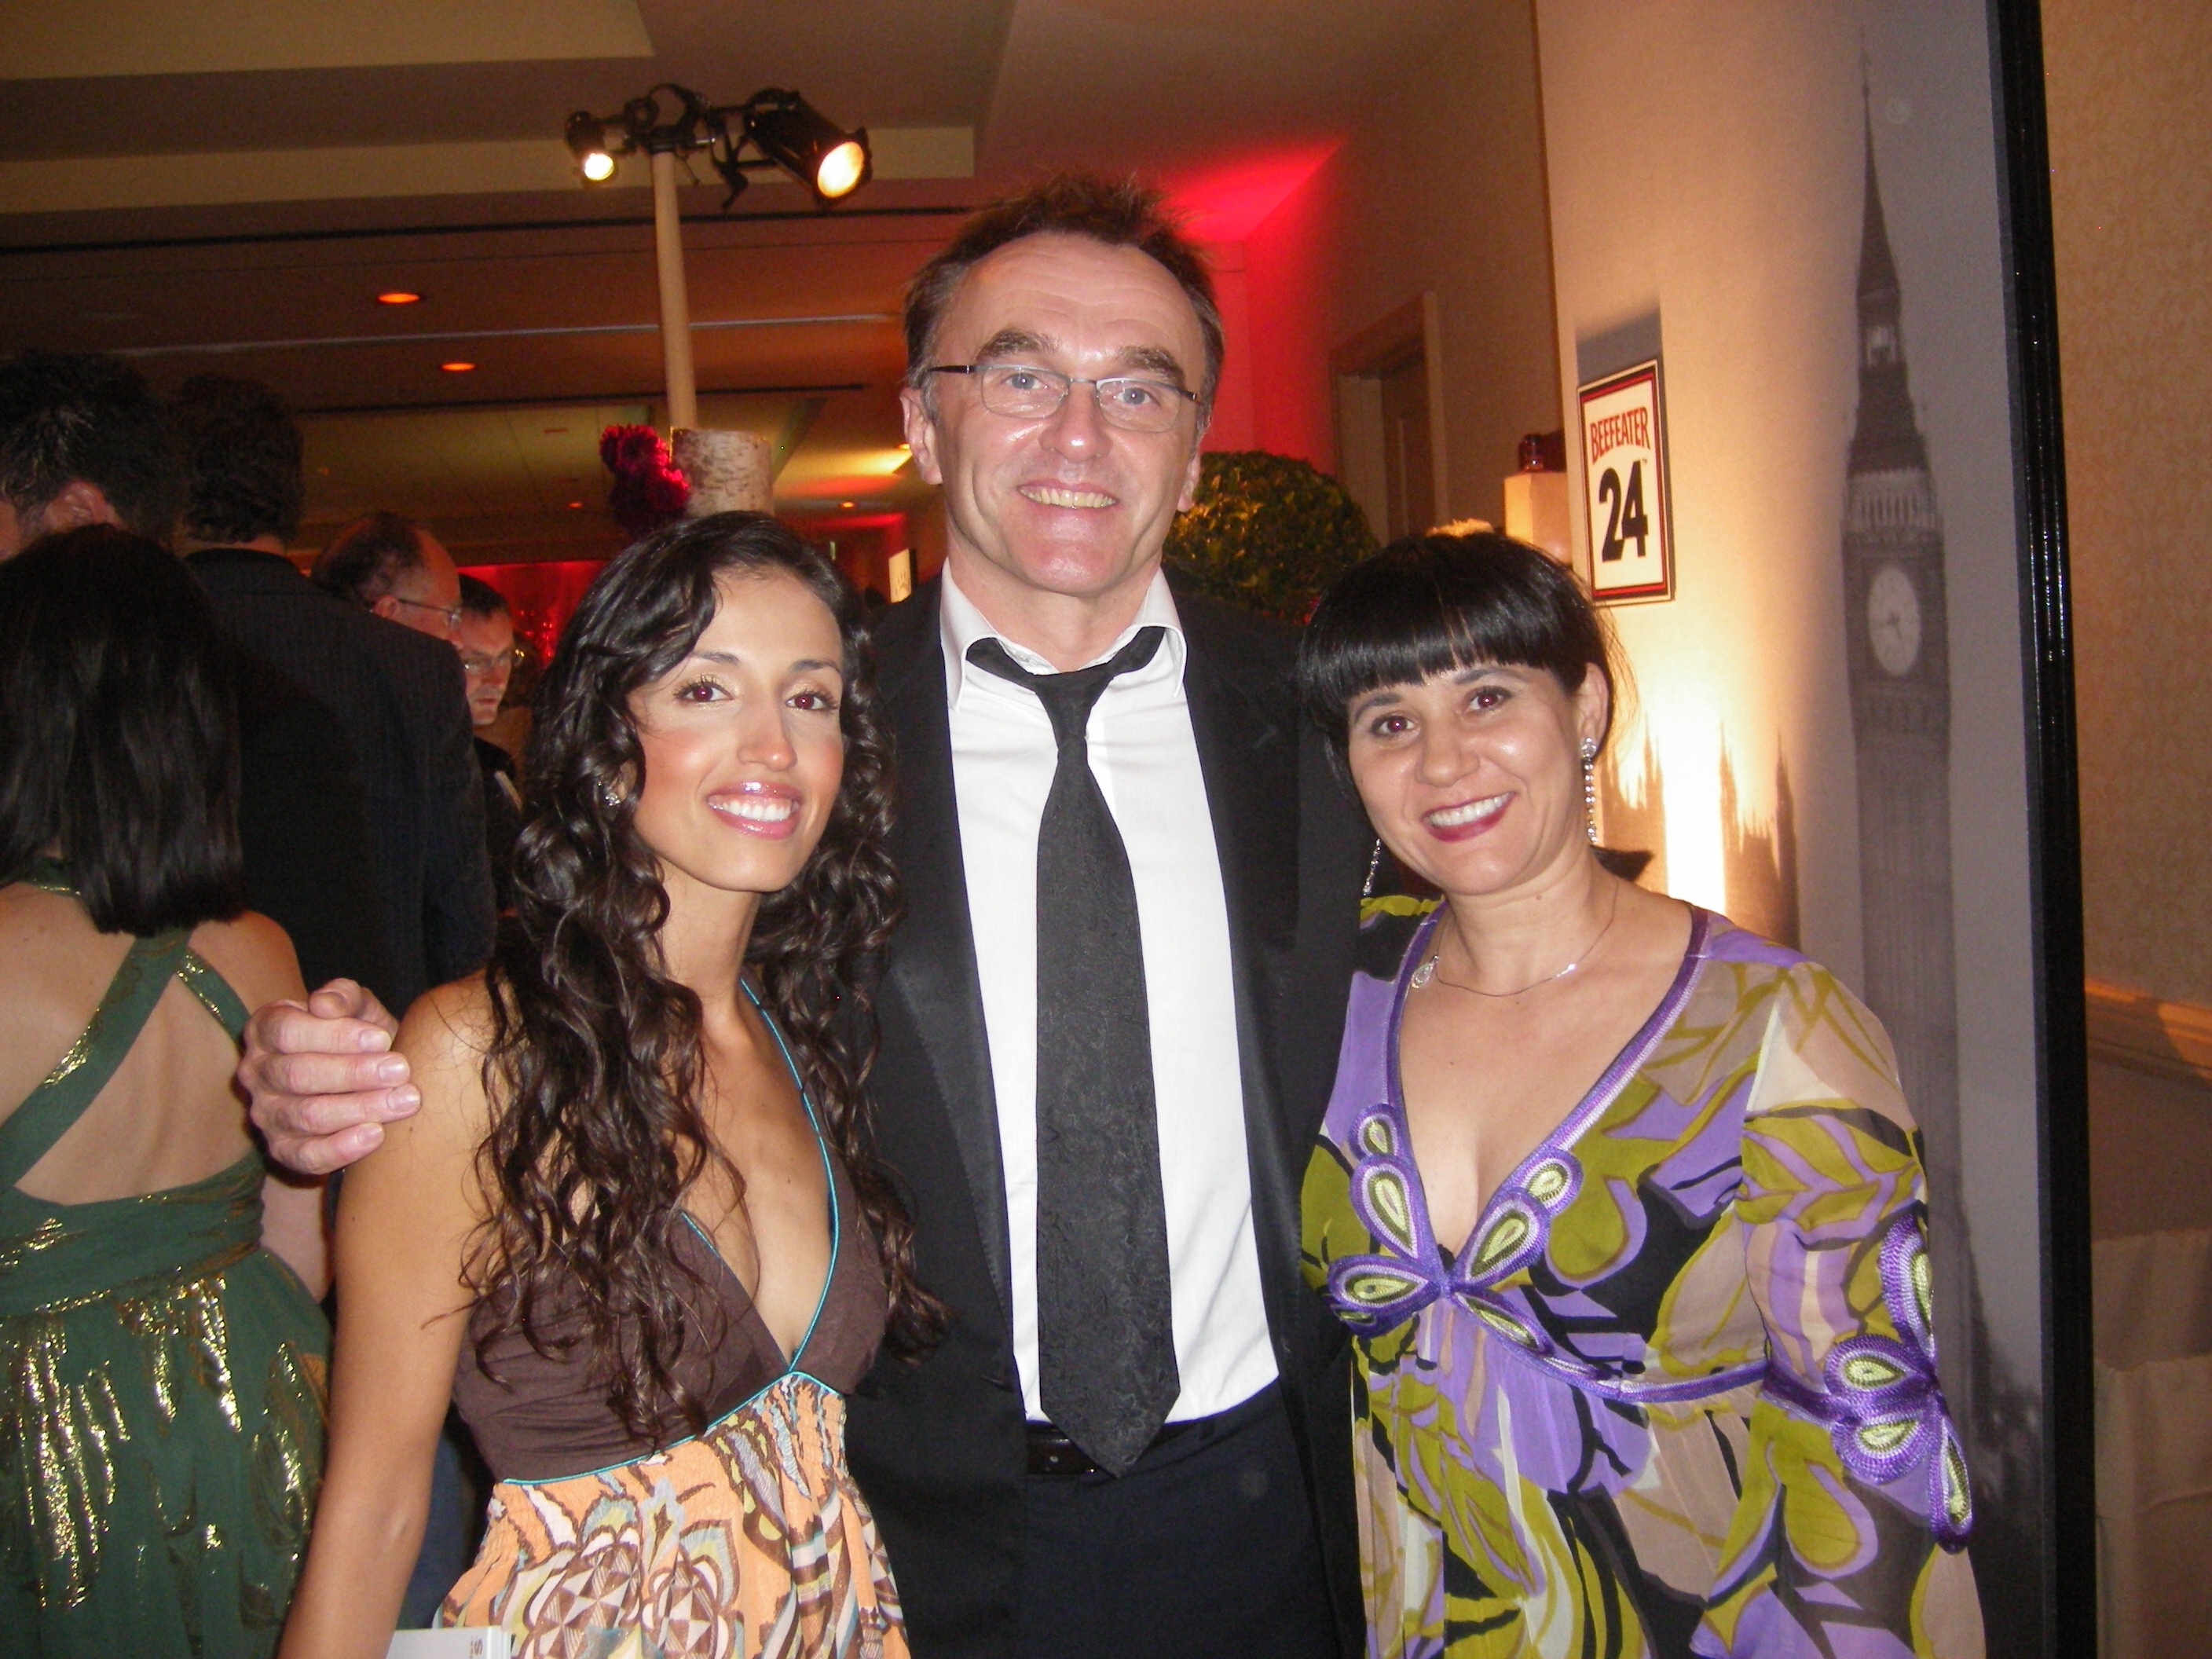 Seli Marset, Danny Boyle and Bianca Bagatourian at BAFTA LA